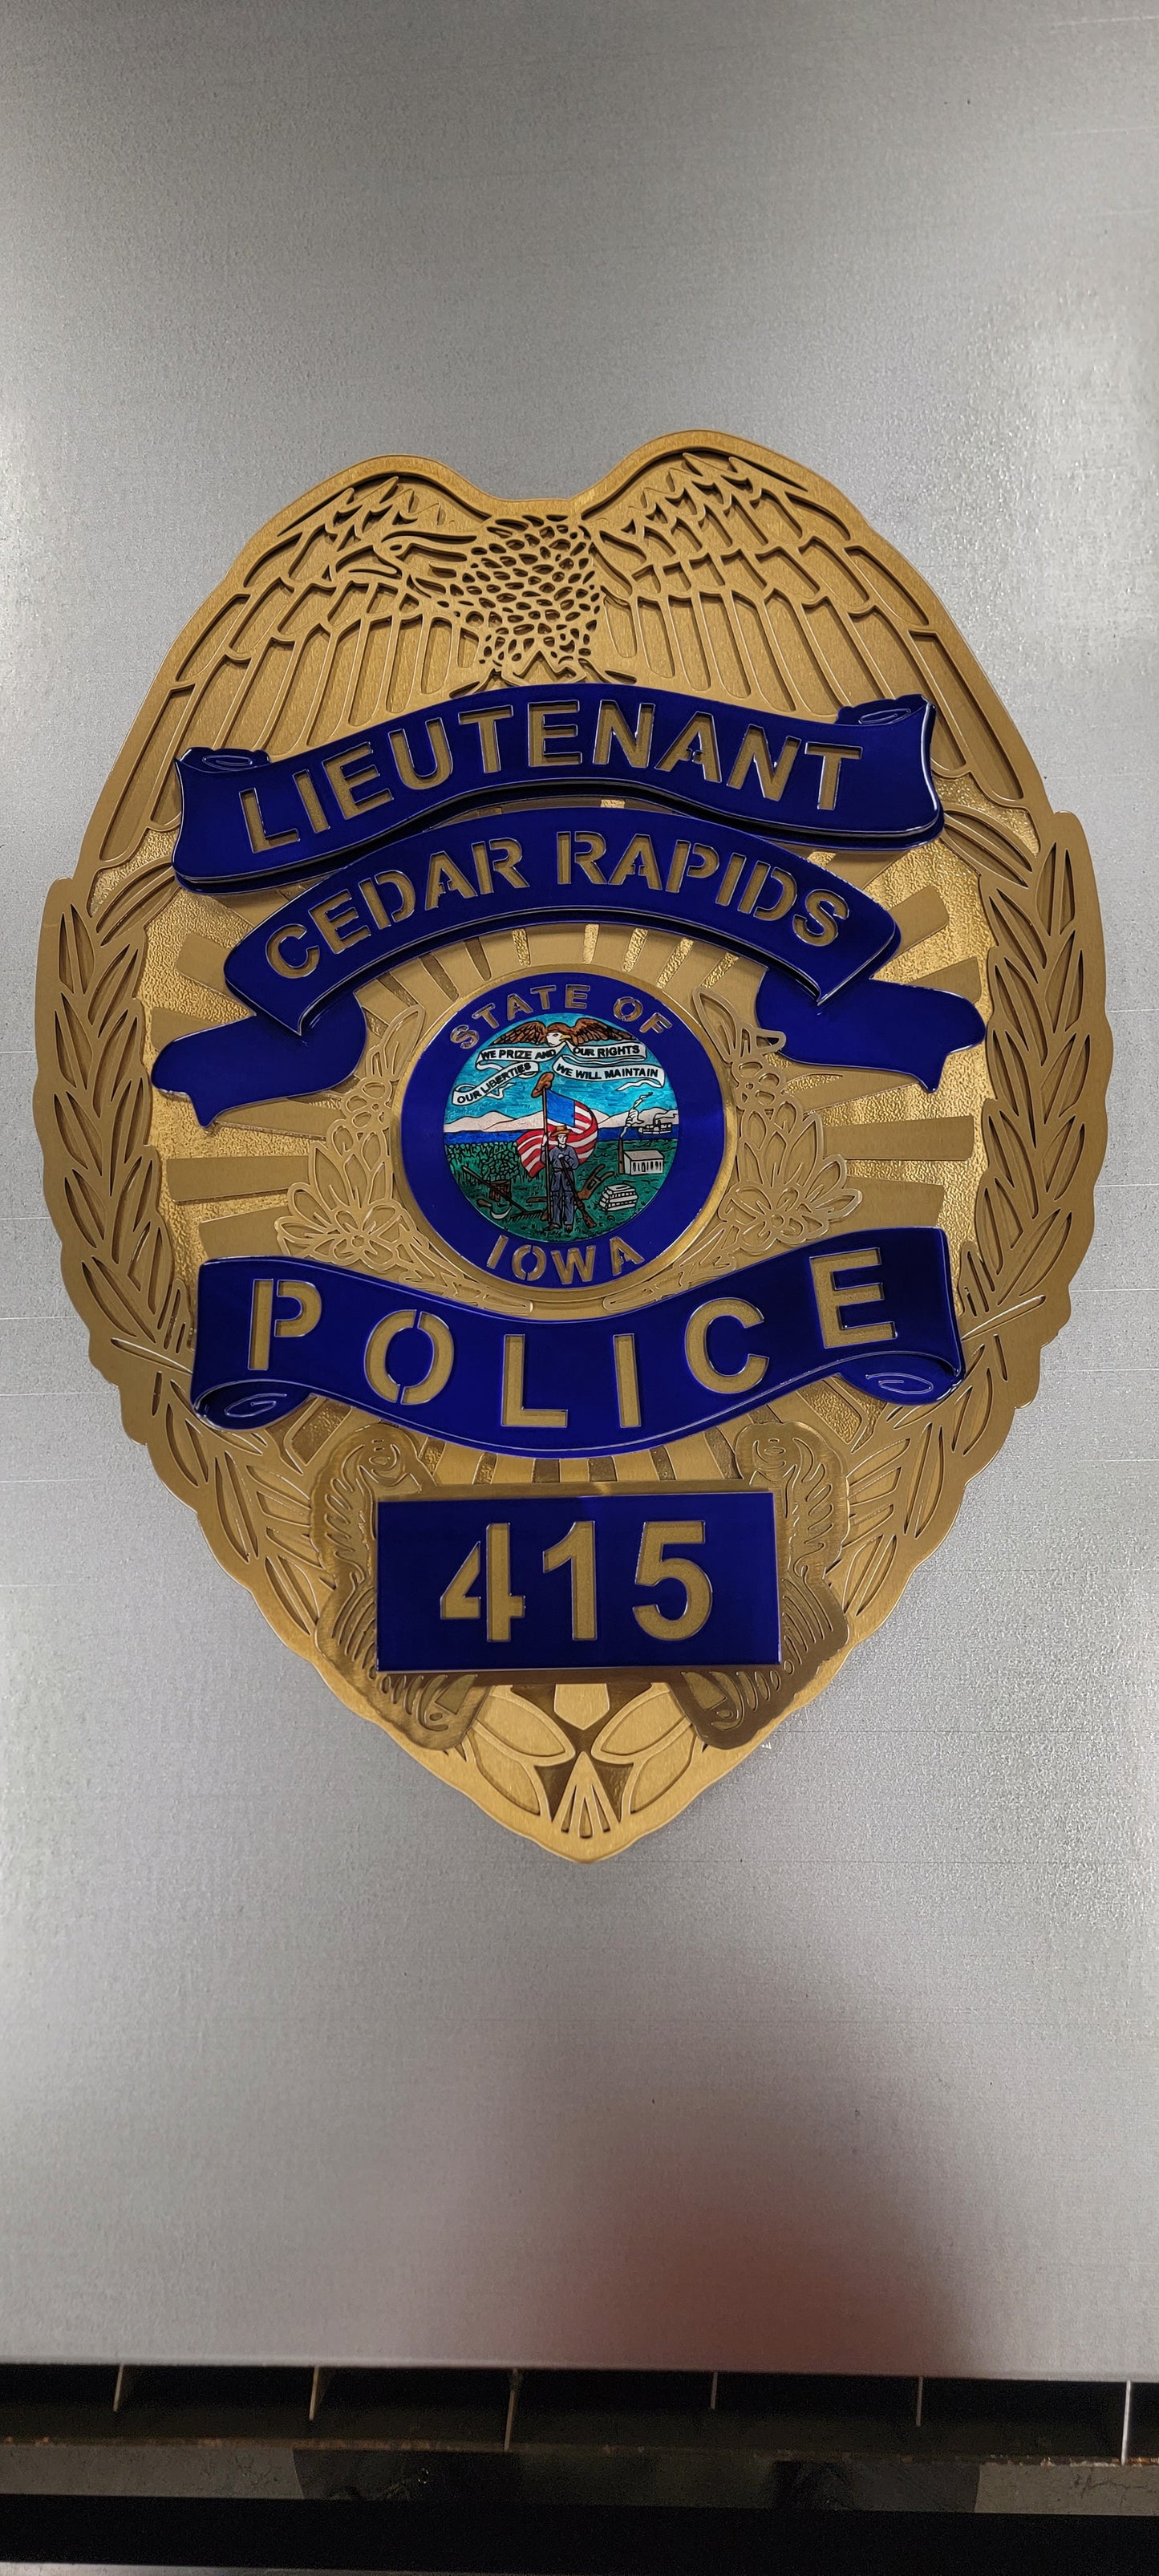 Lieutenant Cedar Rapids Police Badge